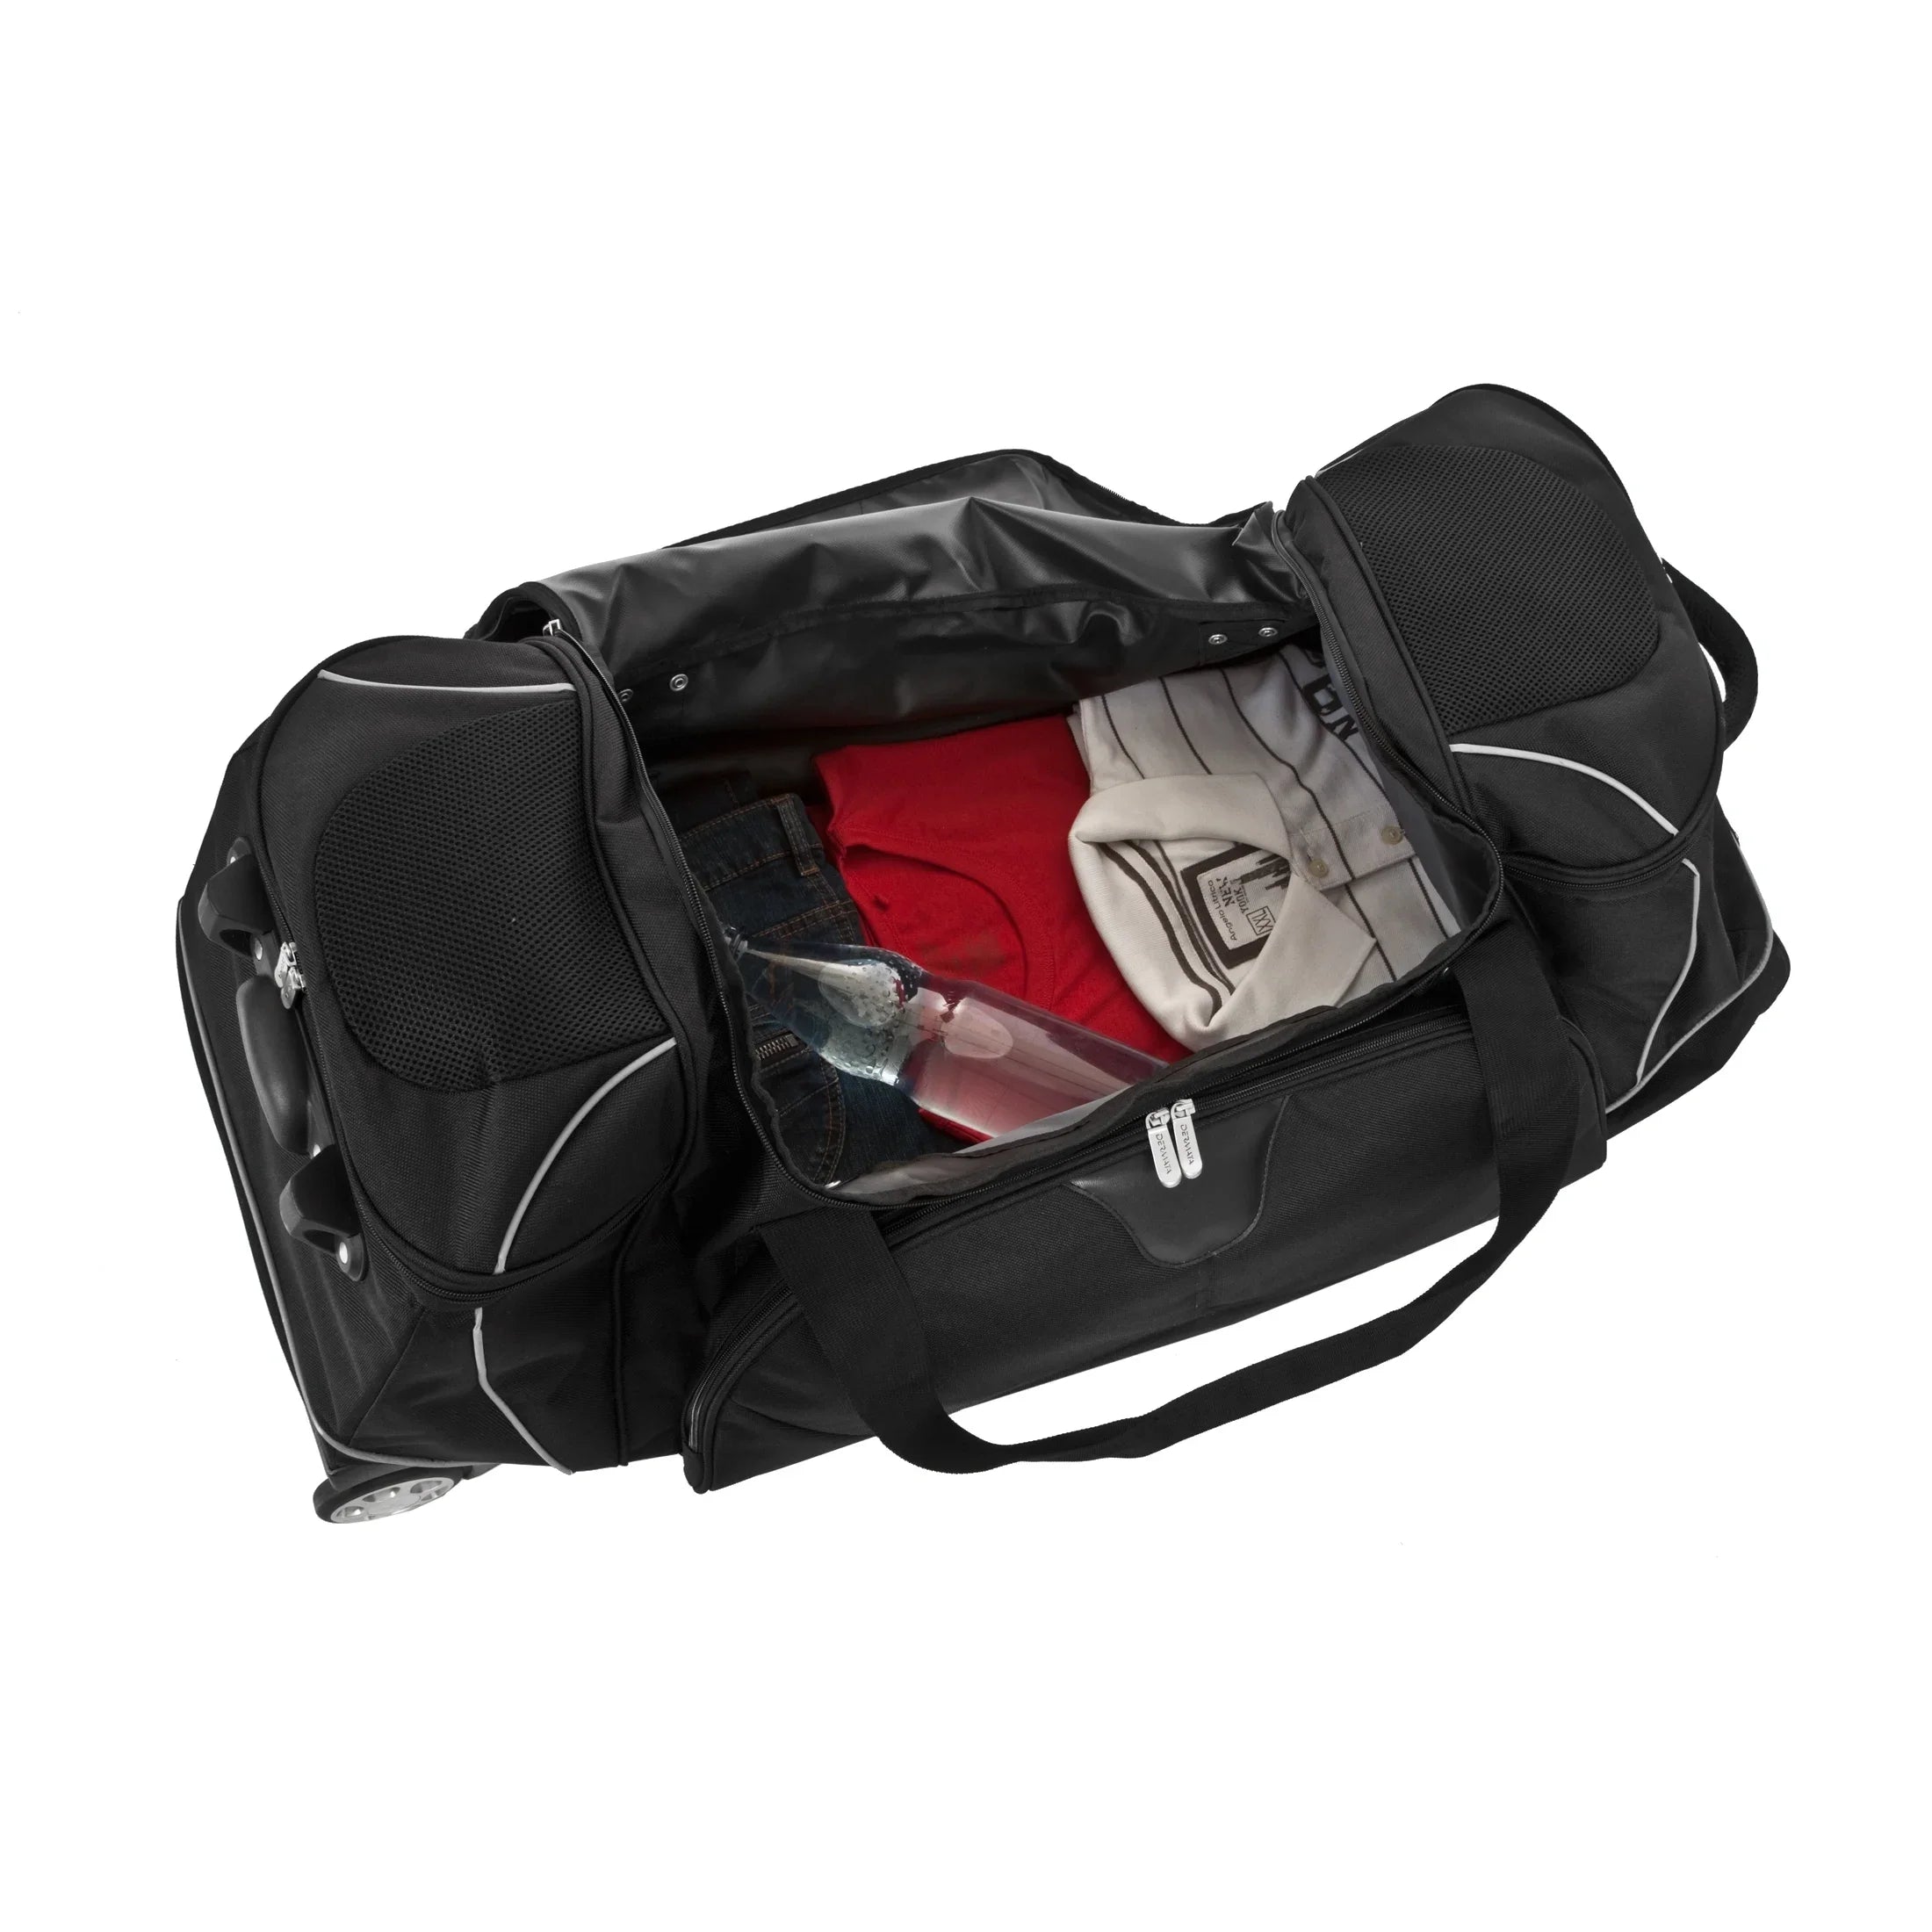 Dermata Reise Rollenreisetasche mit Rucksackfunktion 96 cm - schwarz